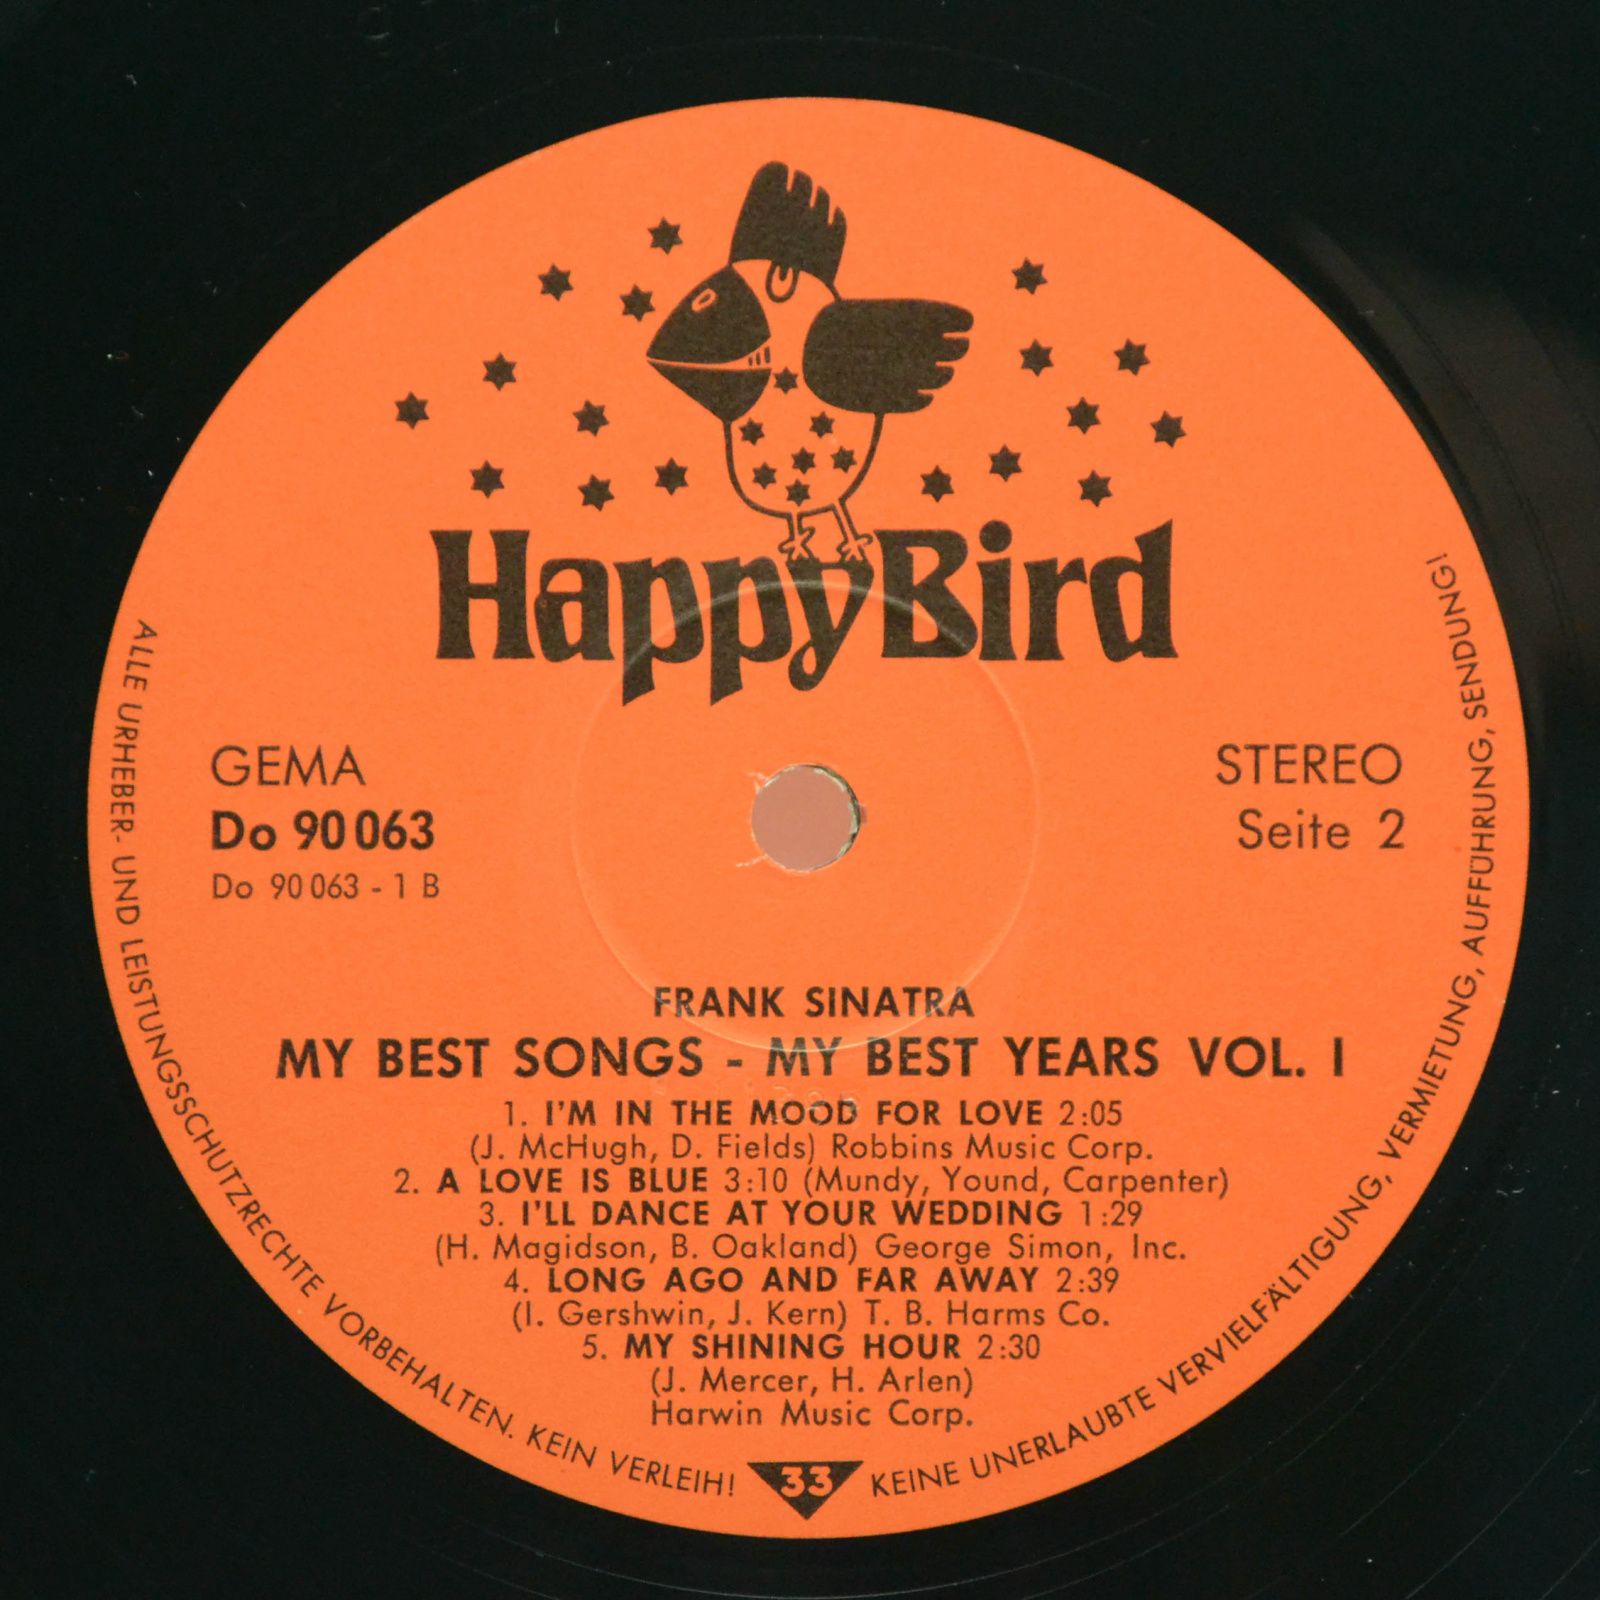 Frank Sinatra — My Best Songs - My Best Years Vol.1 (2LP), 1981